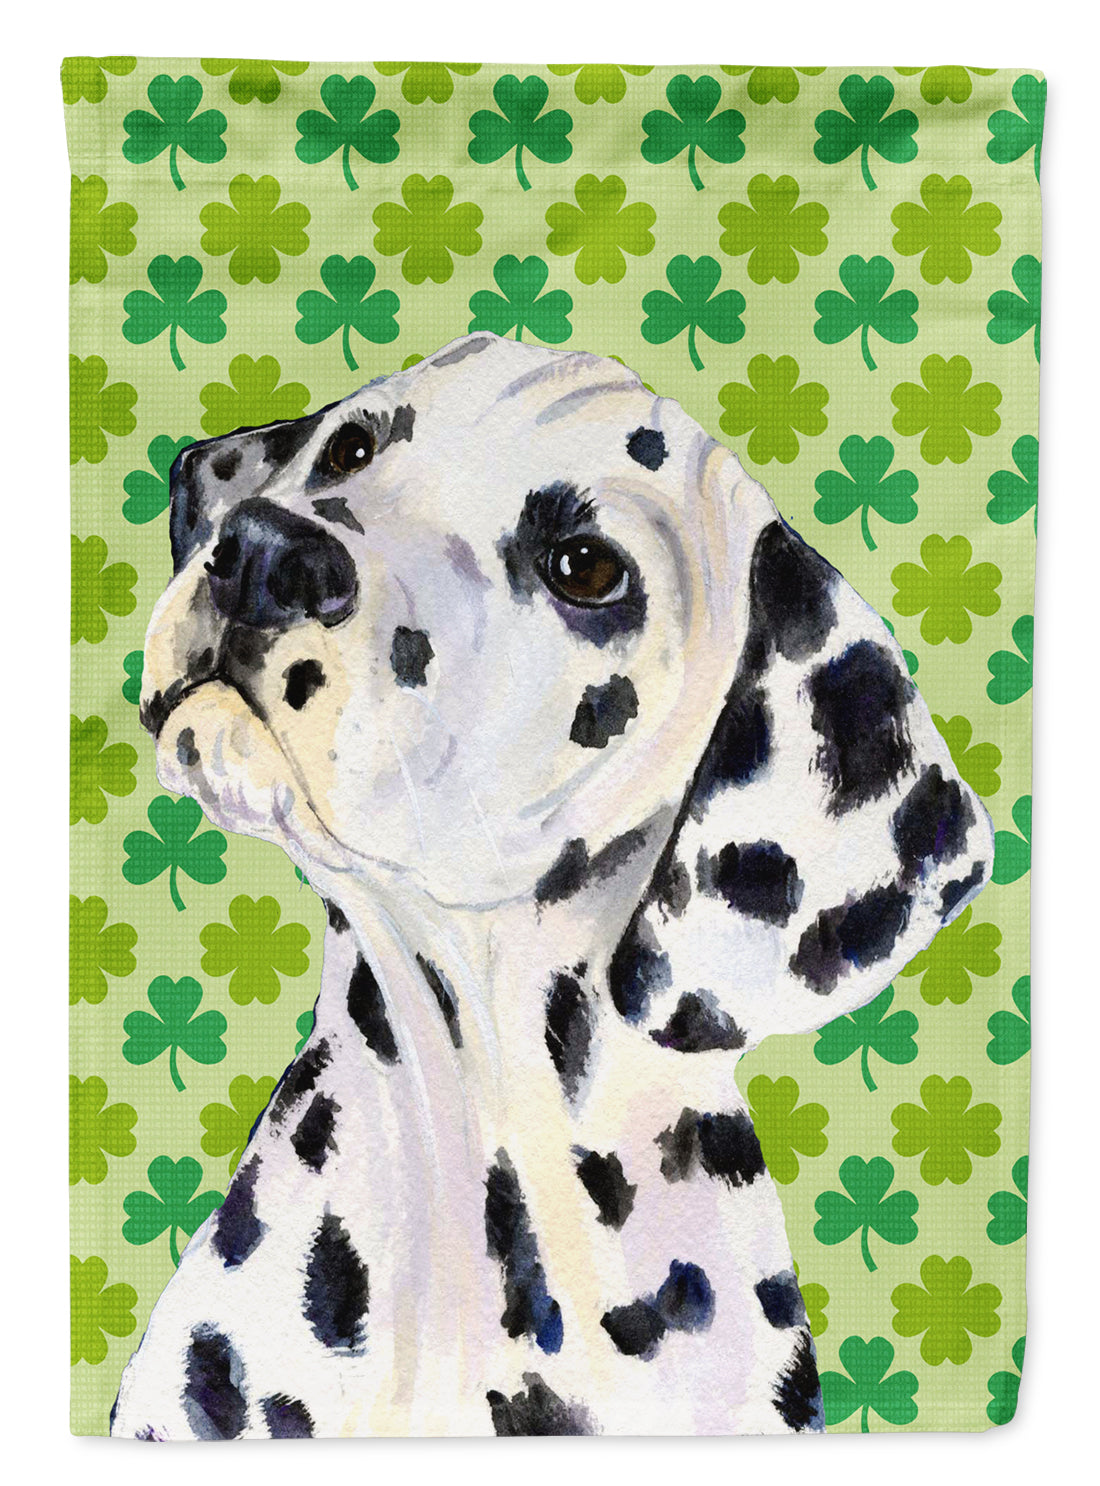 Dalmatian St. Patrick's Day Shamrock Portrait Flag Canvas House Size  the-store.com.